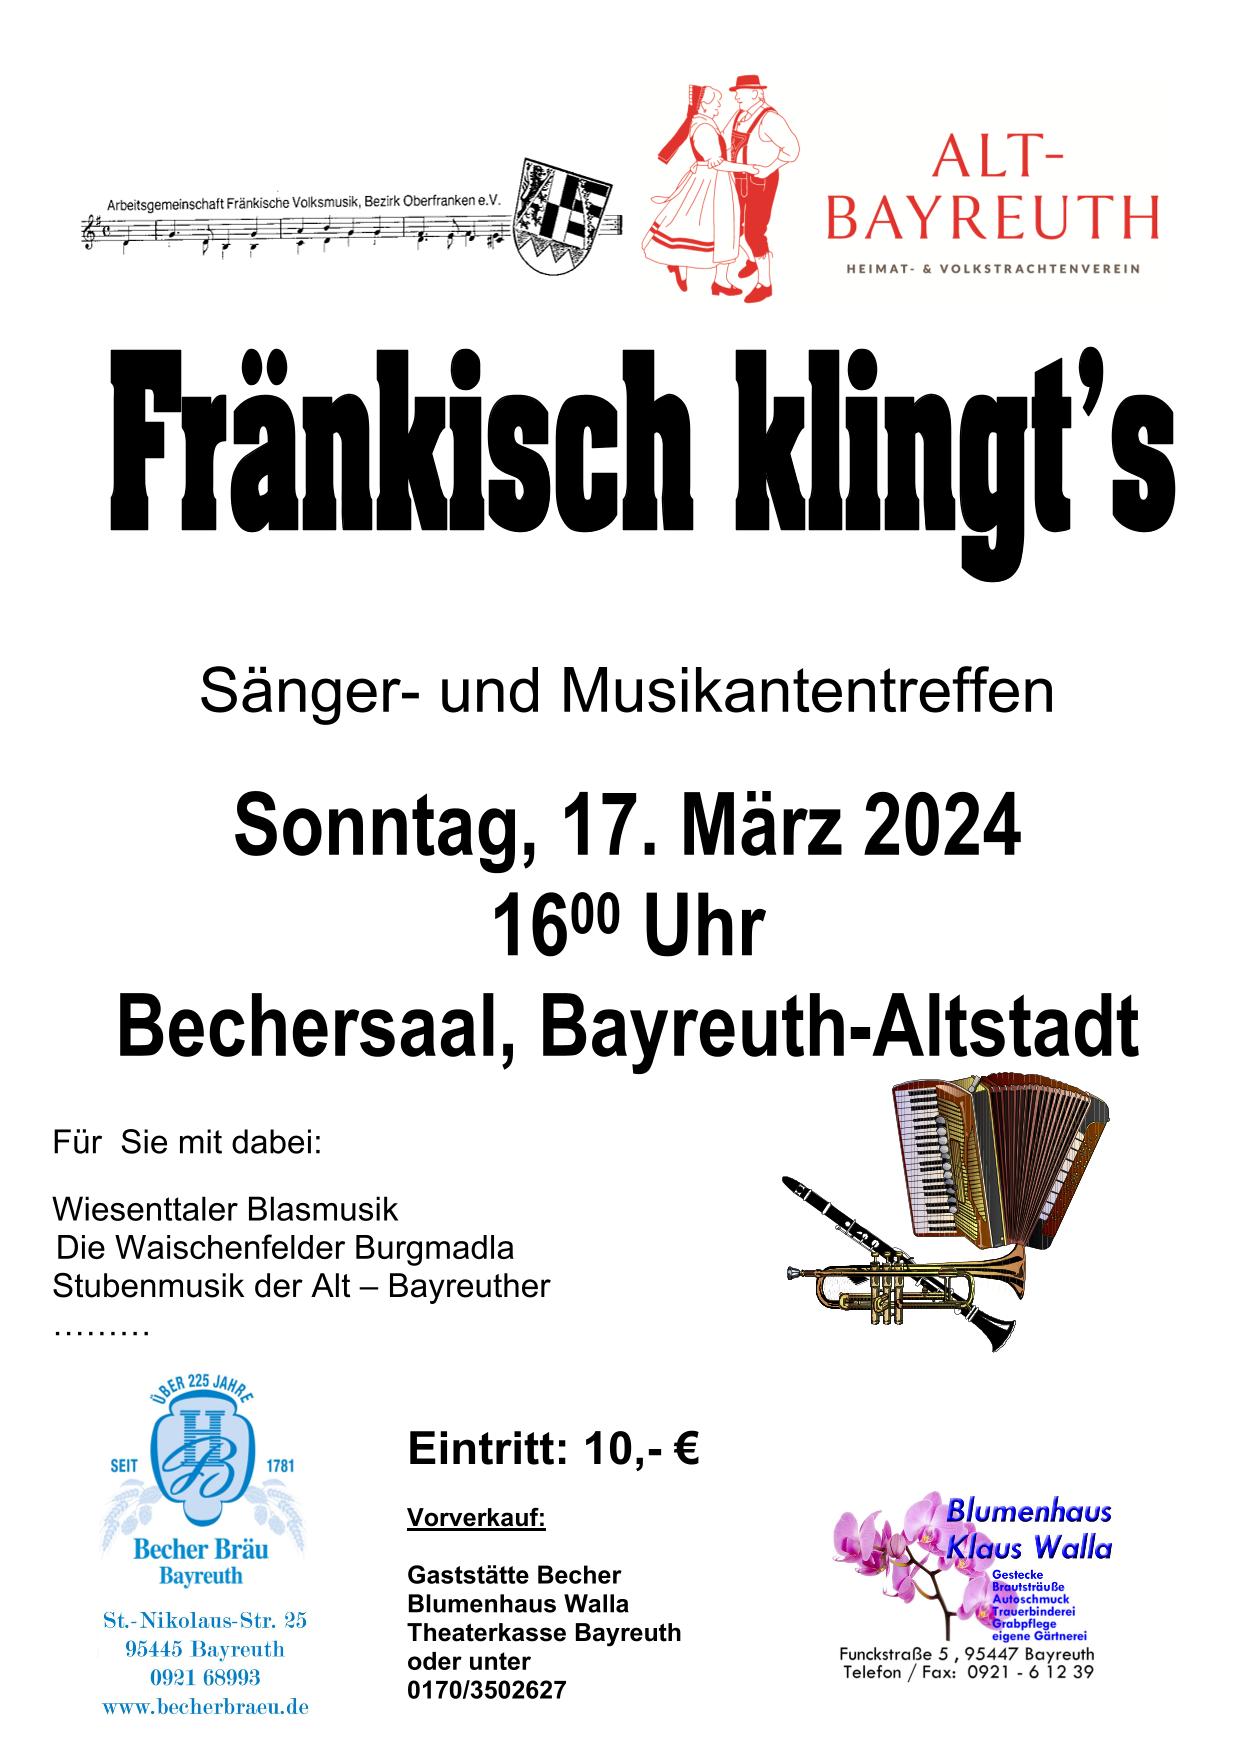 Poster Fränkisch klingt's Sonntag, 17. März 2024 16:00 Uhr Bechersaal, Bayreuth-Altstadt Eintritt 10€